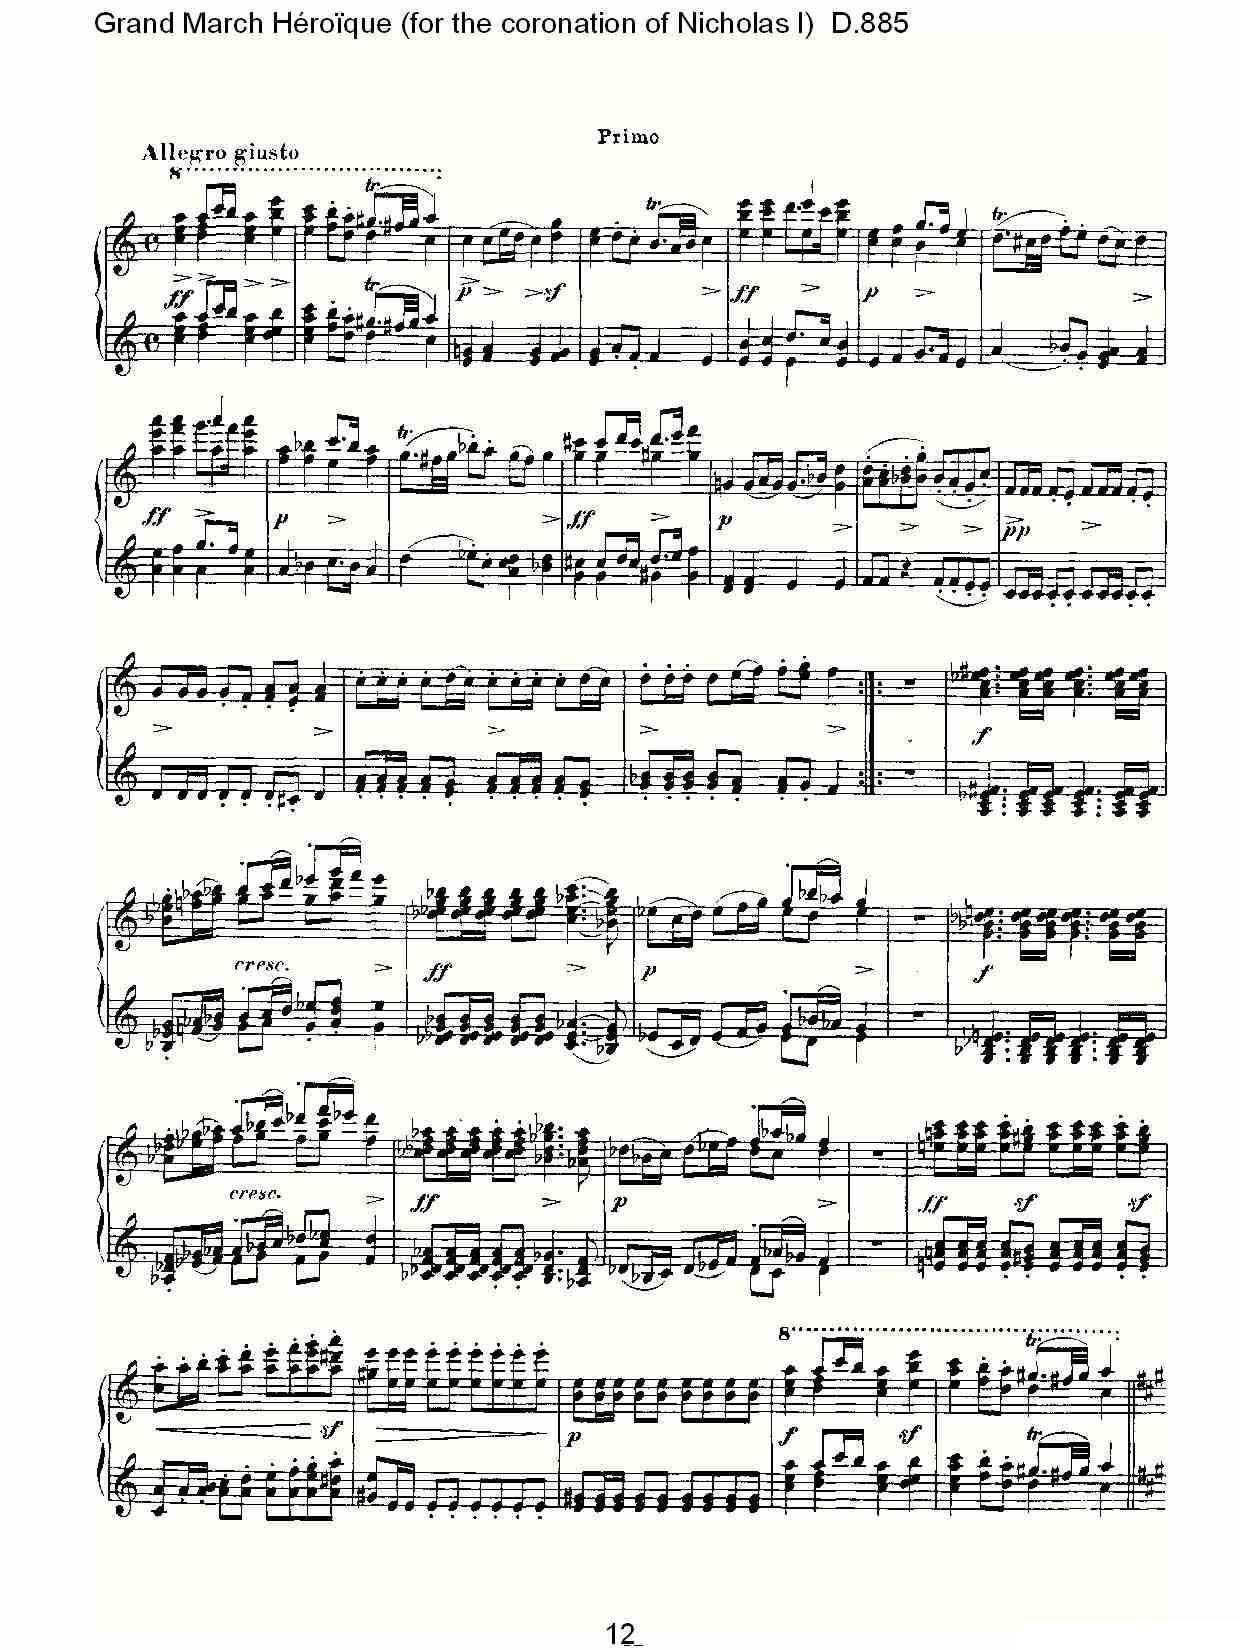 豪华进行曲（为尼古拉斯一世加冕礼而作)D.88）钢琴曲谱（图12）